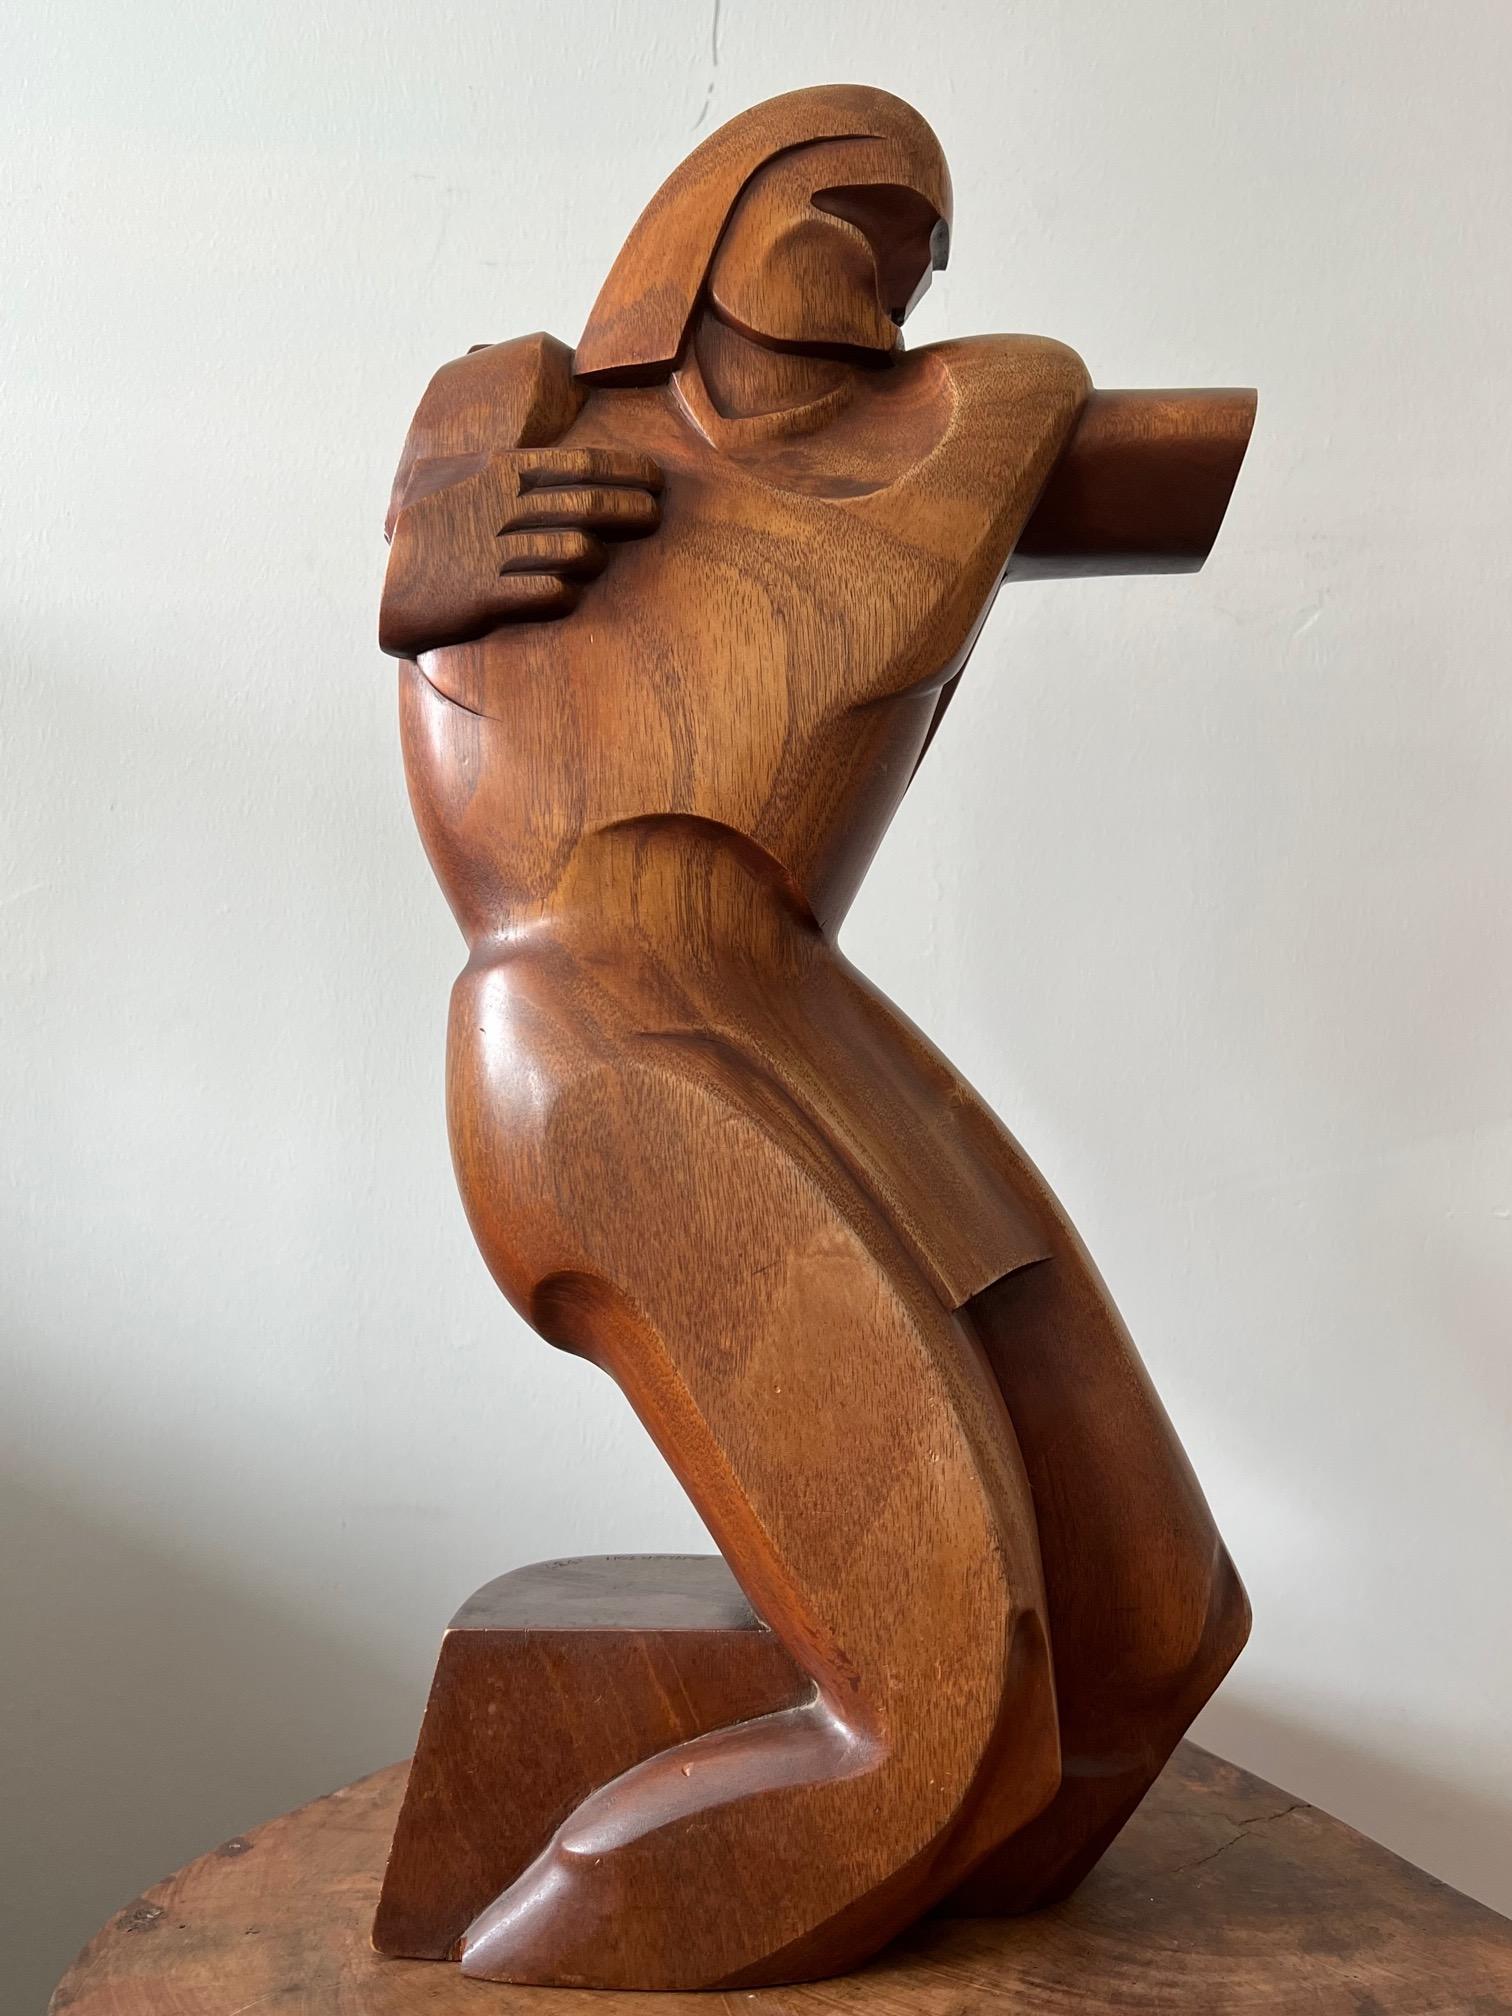 Insolite sculpture en bois très stylisée de Raymond Phillips Sanderson, signée et datée de 1937.  Connu pour son intérêt pour les thèmes du Sud-Ouest et l'influence de l'Art déco, cet exemplaire est un excellent exemple. Note sur l'artiste :